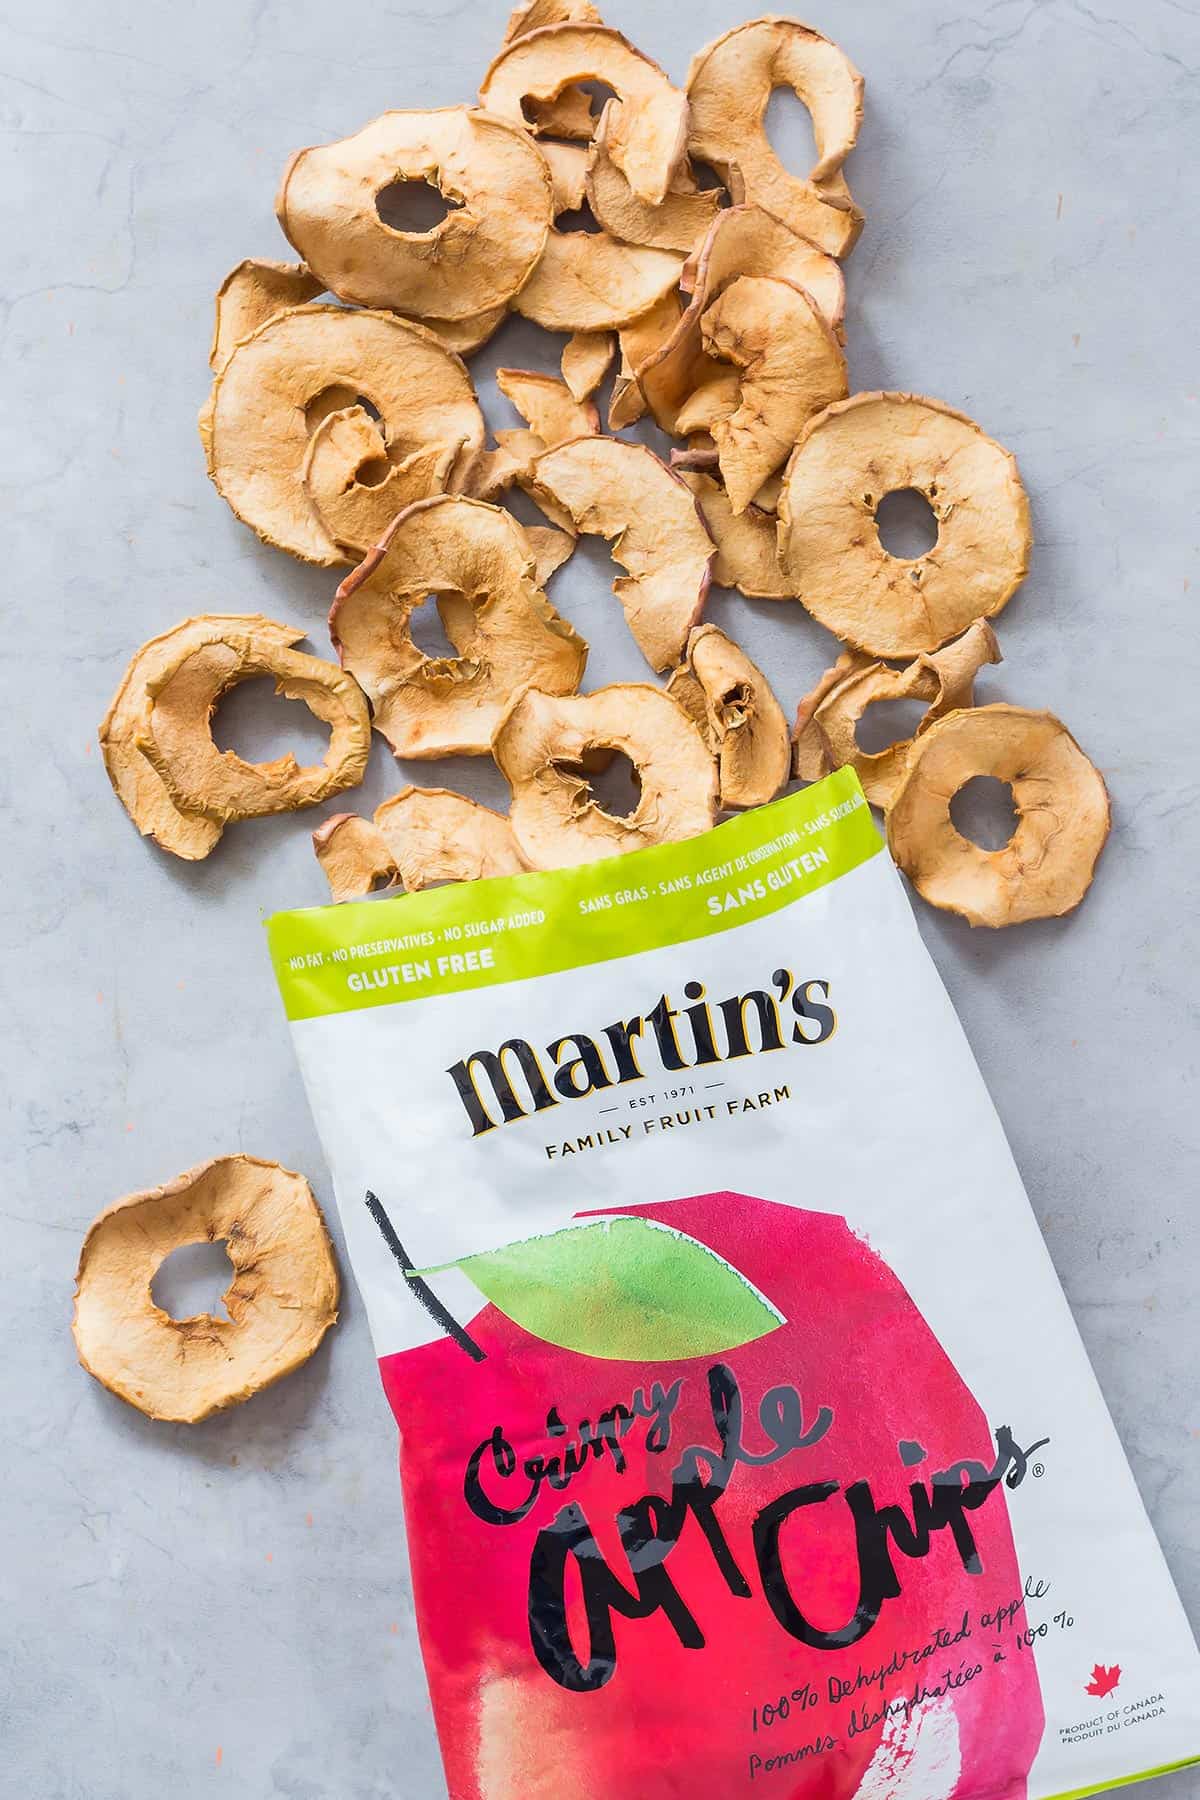 Martin's Apple Chips